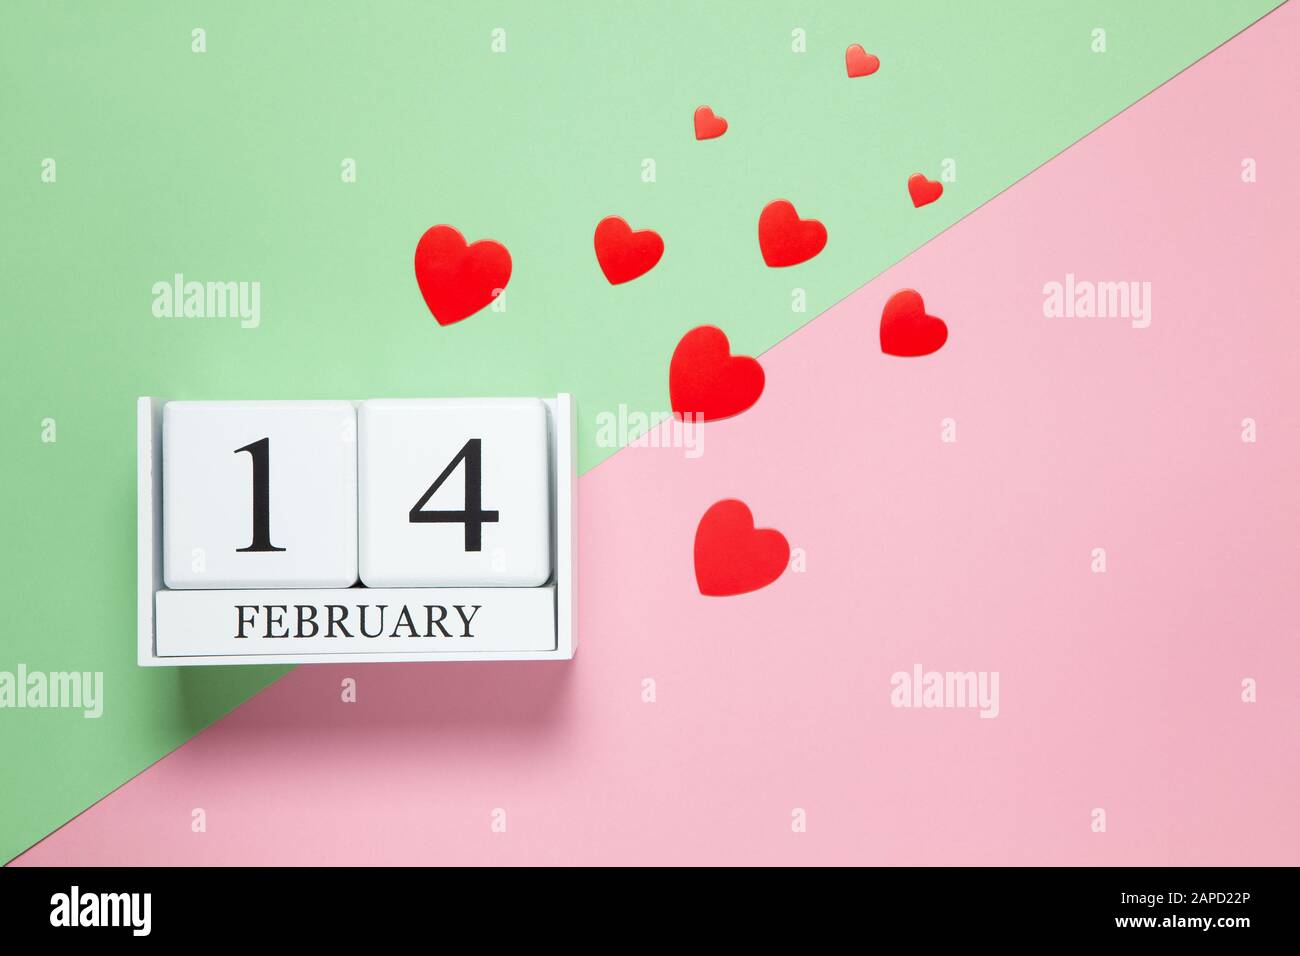 Calendrier perpétuel à la date du 14 février, coeurs confettis de différentes tailles rouges sur fond rose et vert bicolore. Pose plate. Vue de dessus. Saint-Valen Banque D'Images